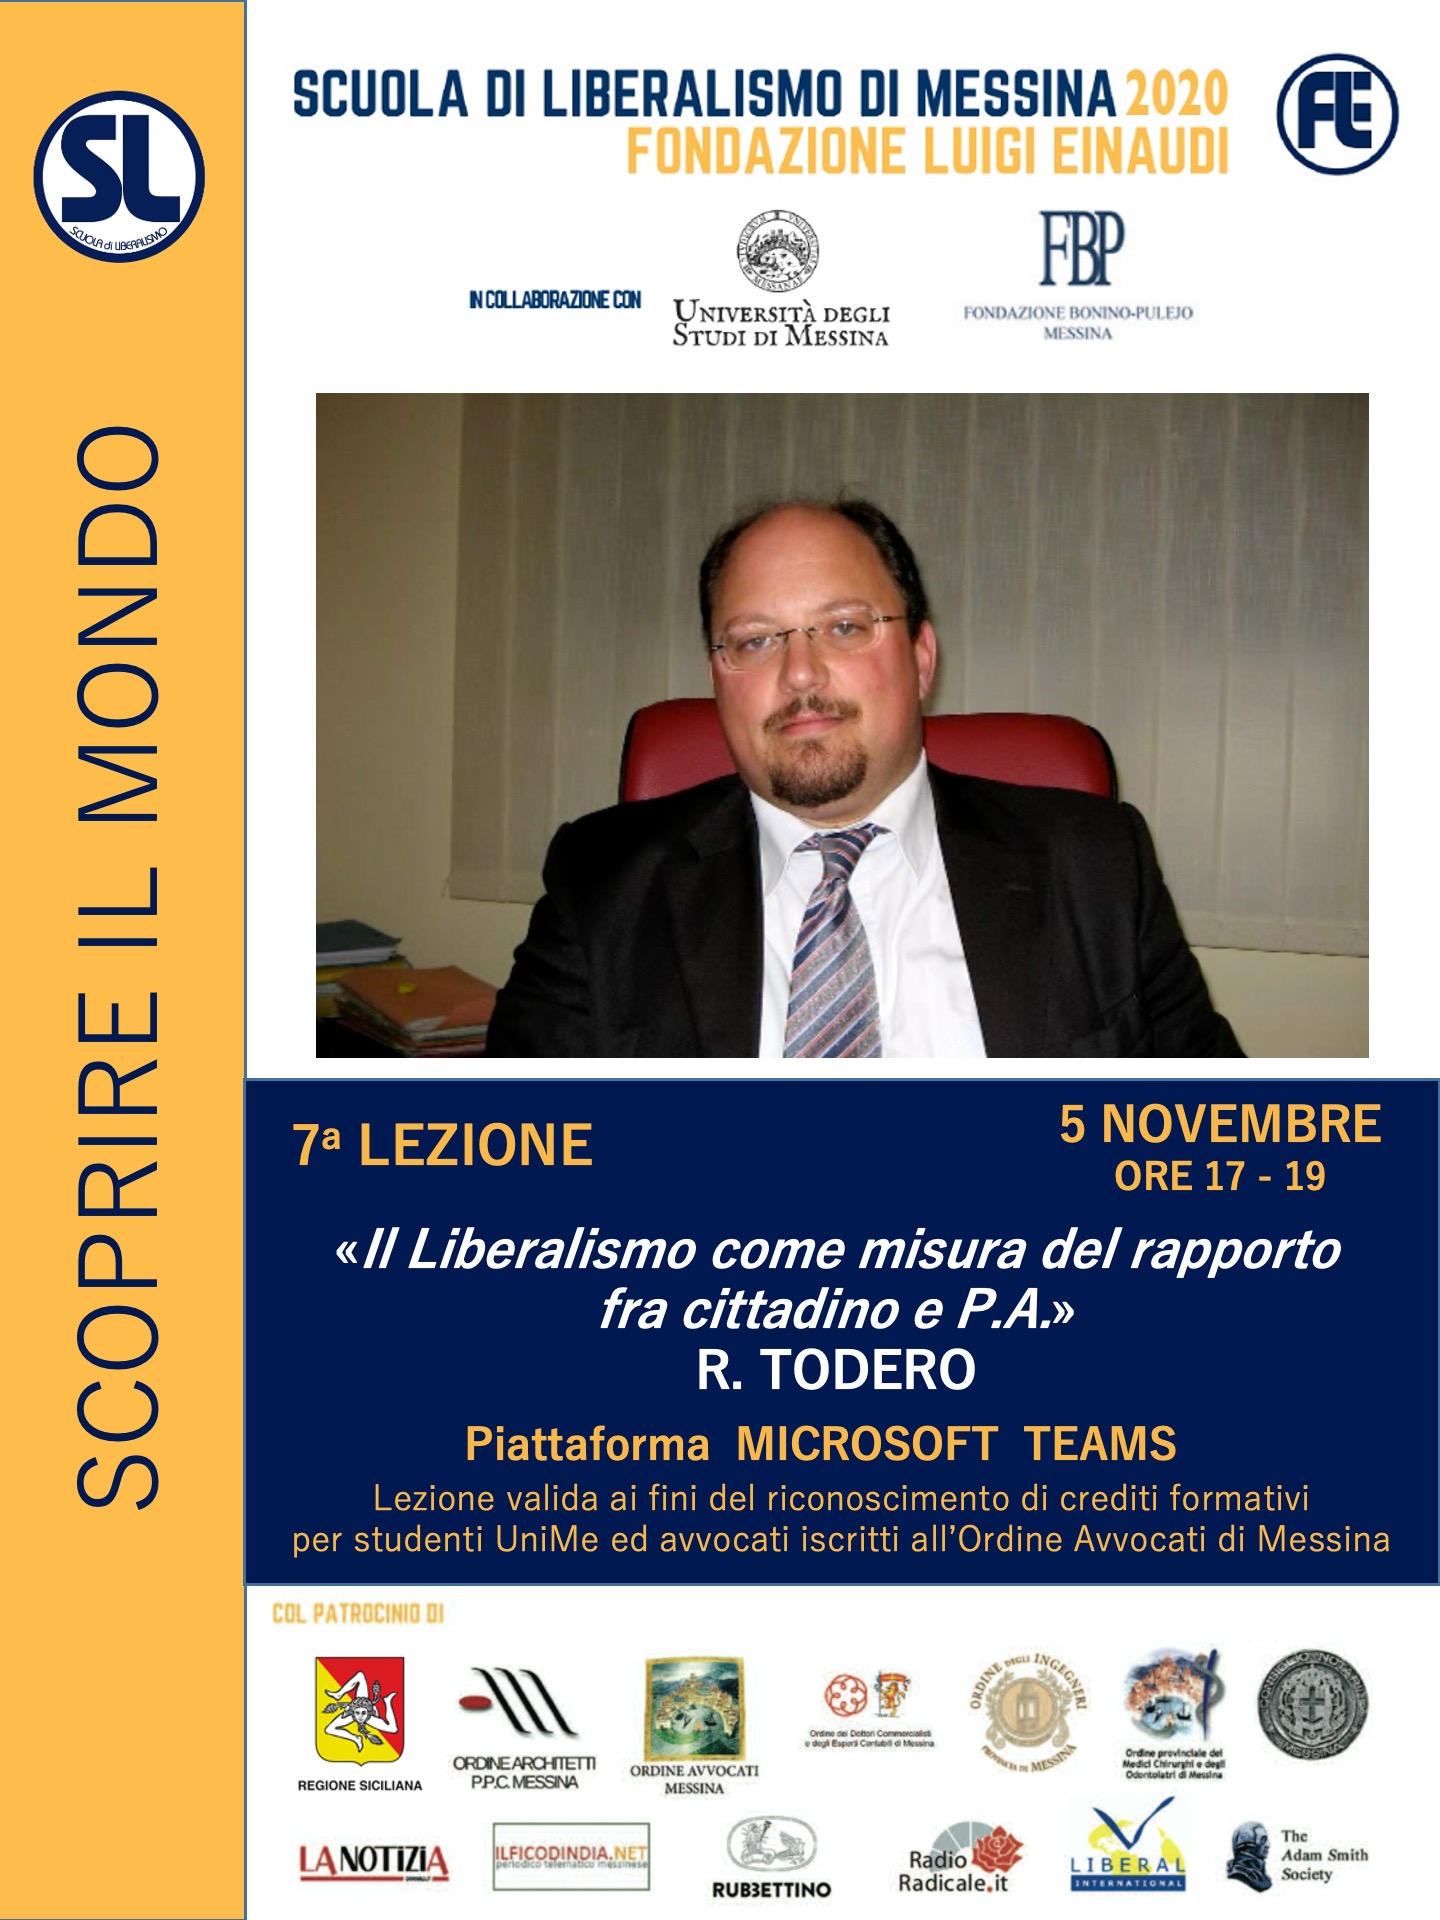 Scuola di Liberalismo 2020 Messina: 5 novembre lezione di Rocco Todero